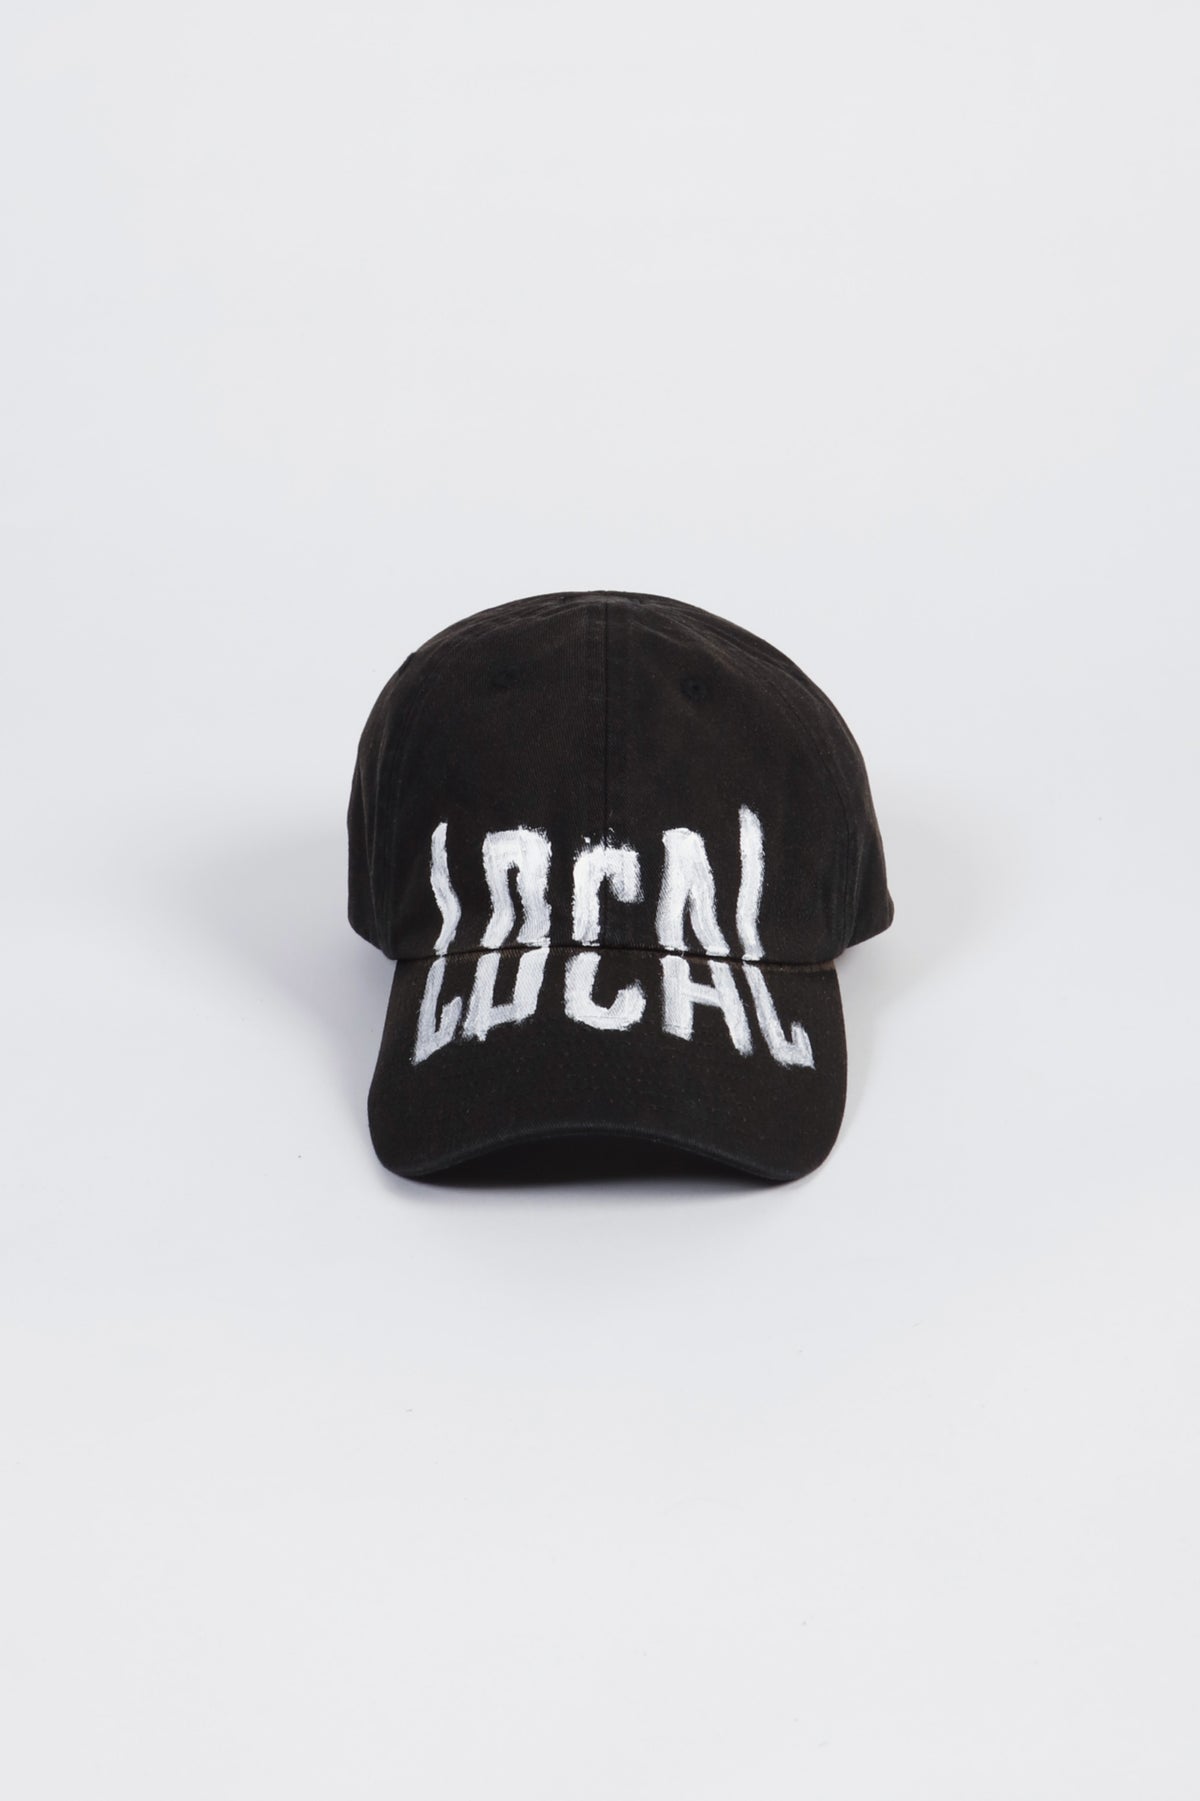 "LOCAL" CAP